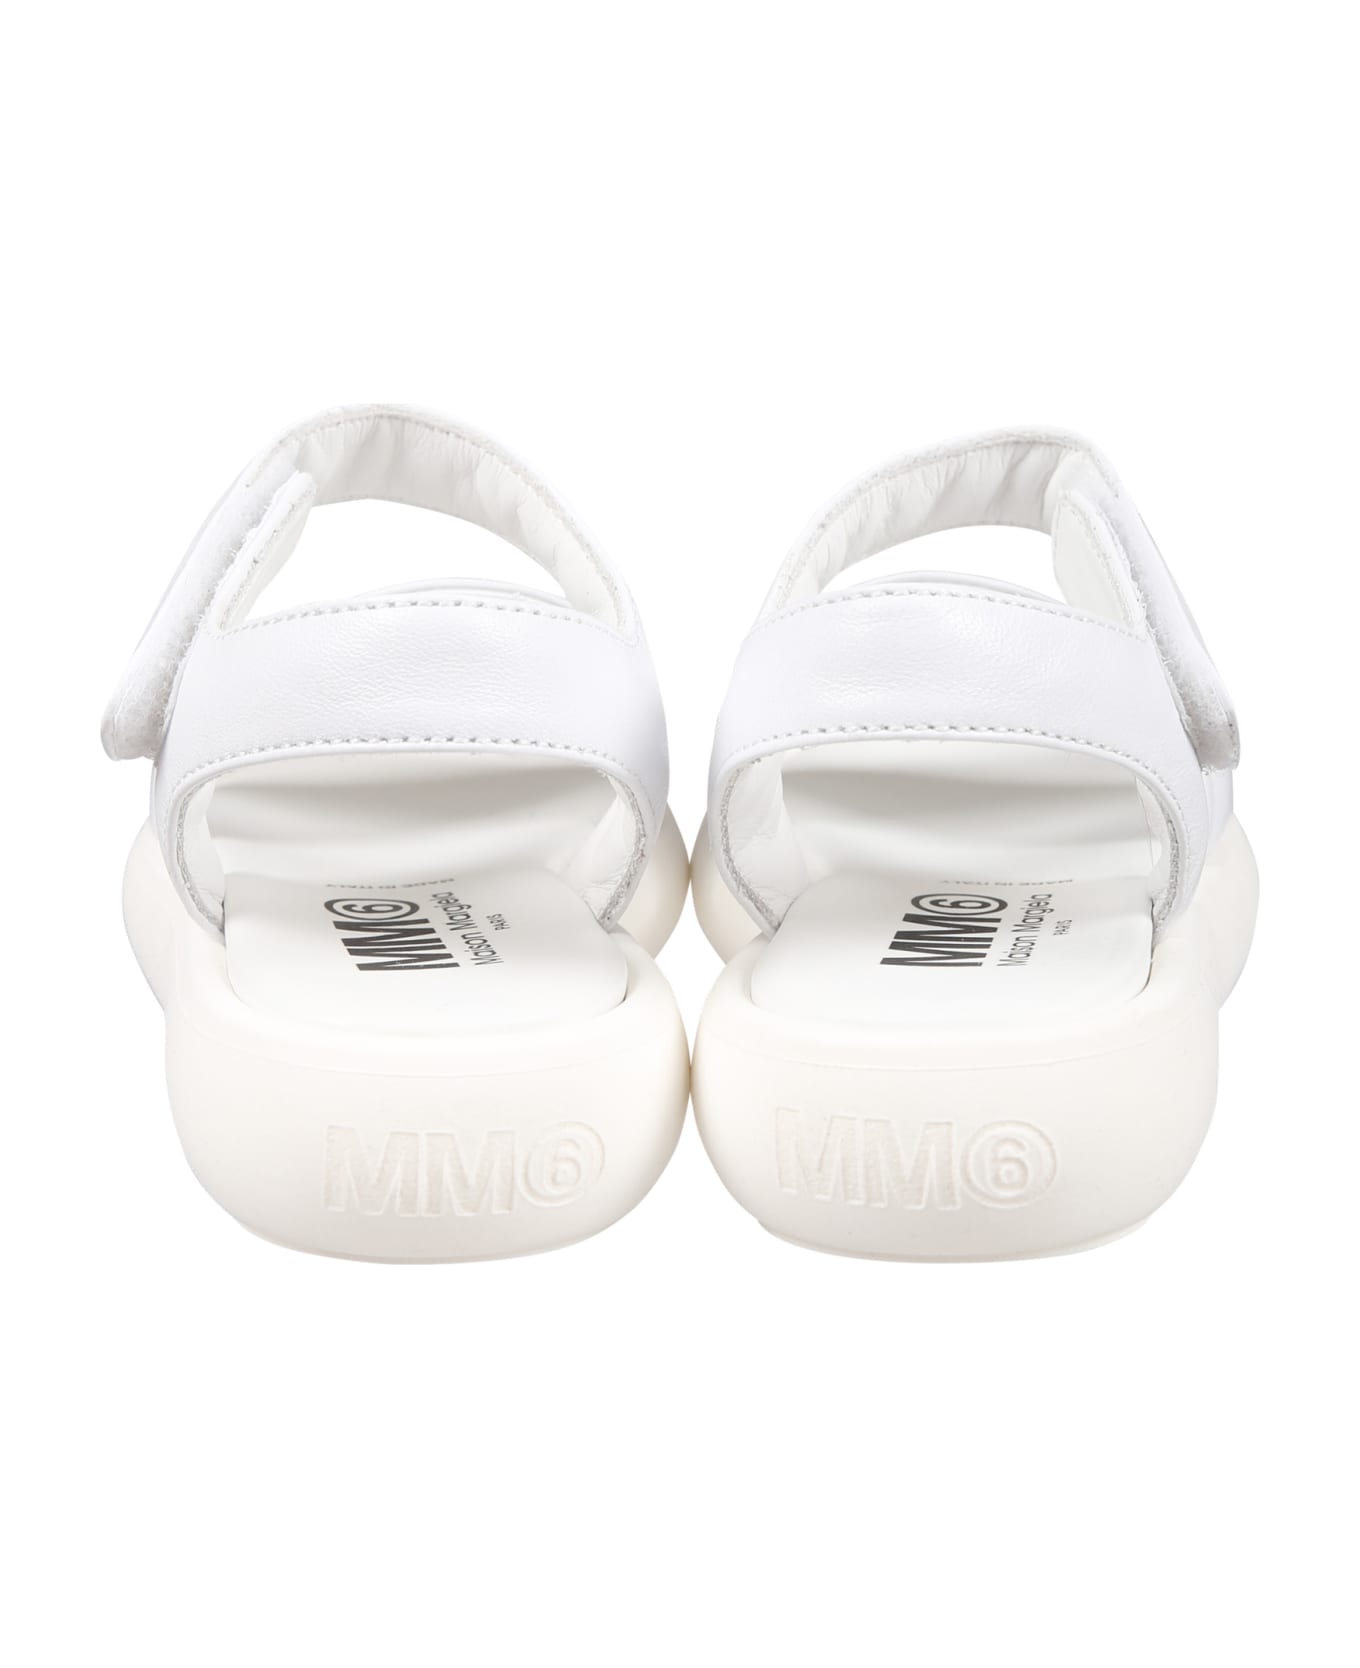 MM6 Maison Margiela White Sandals For Girl With Logo - White シューズ